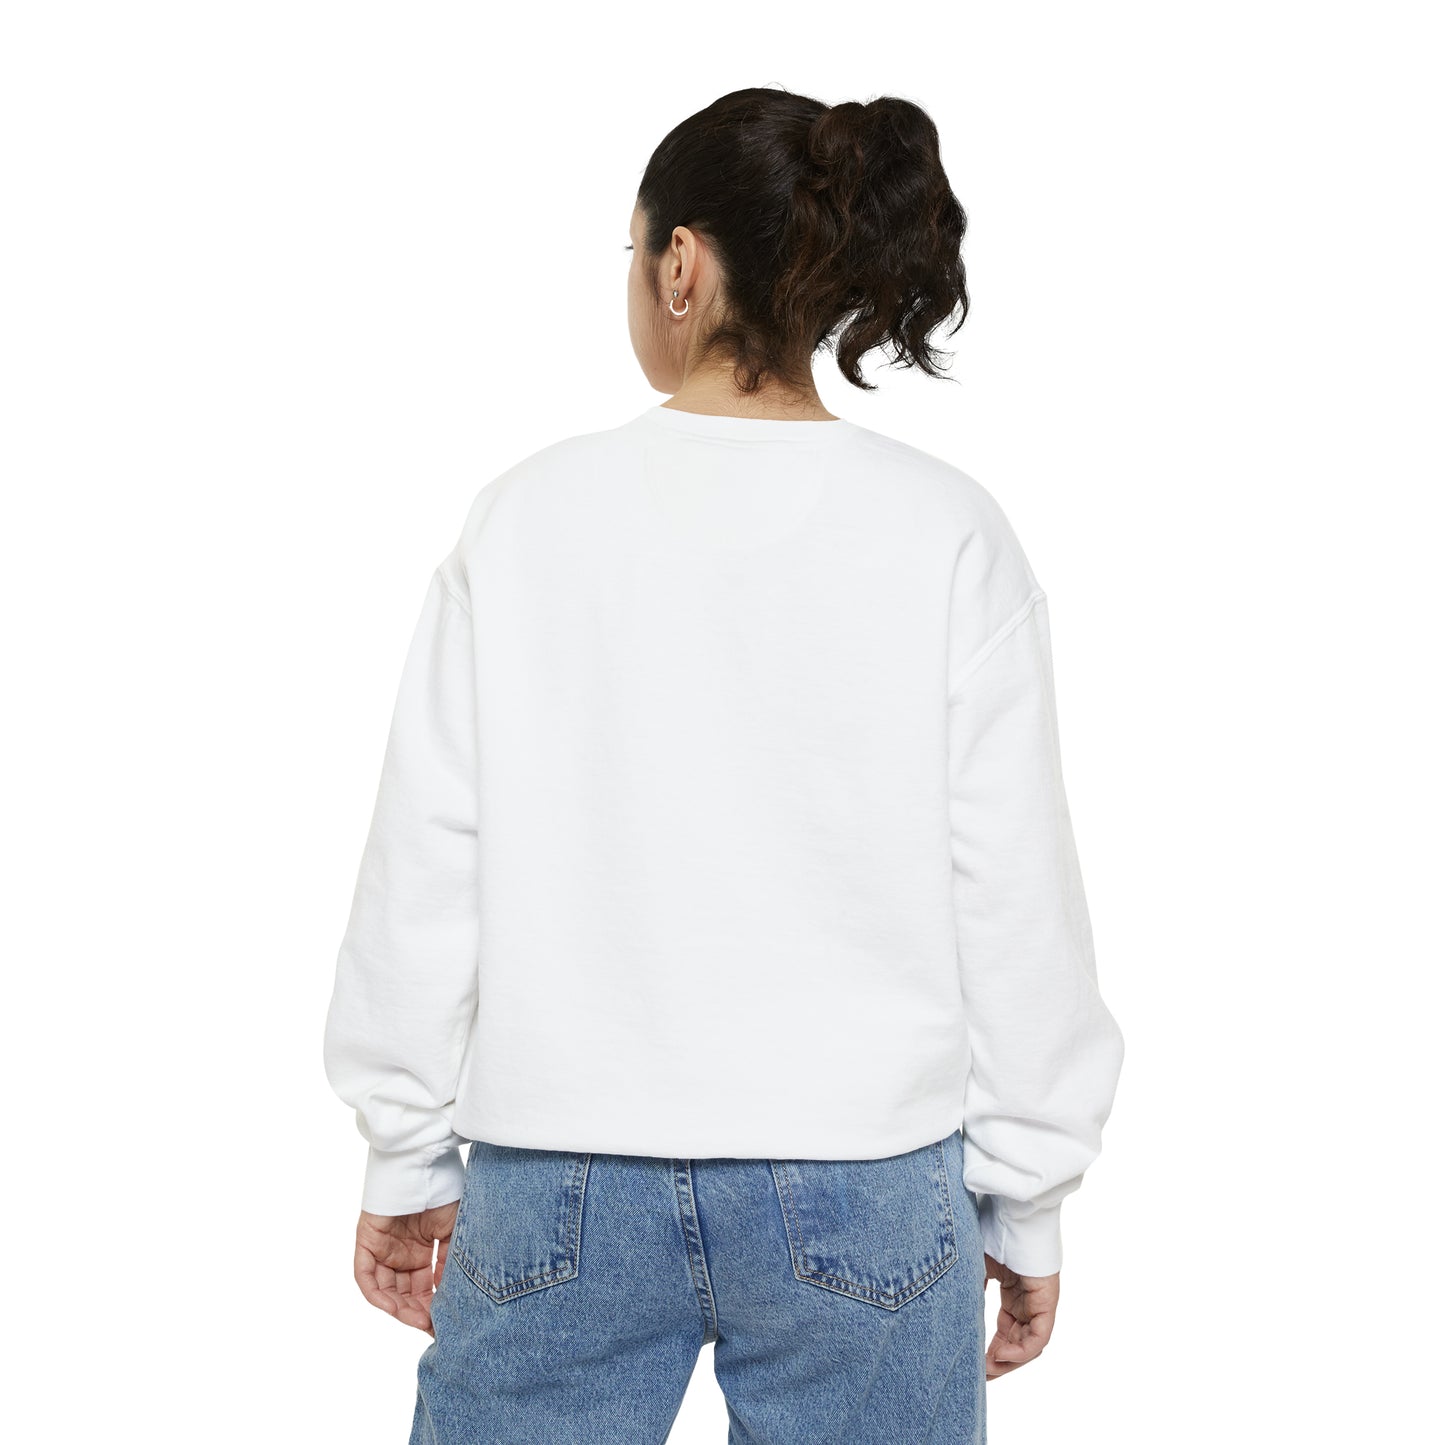 'Détroit Rocque Cité' Sweatshirt | Unisex Garment Dyed